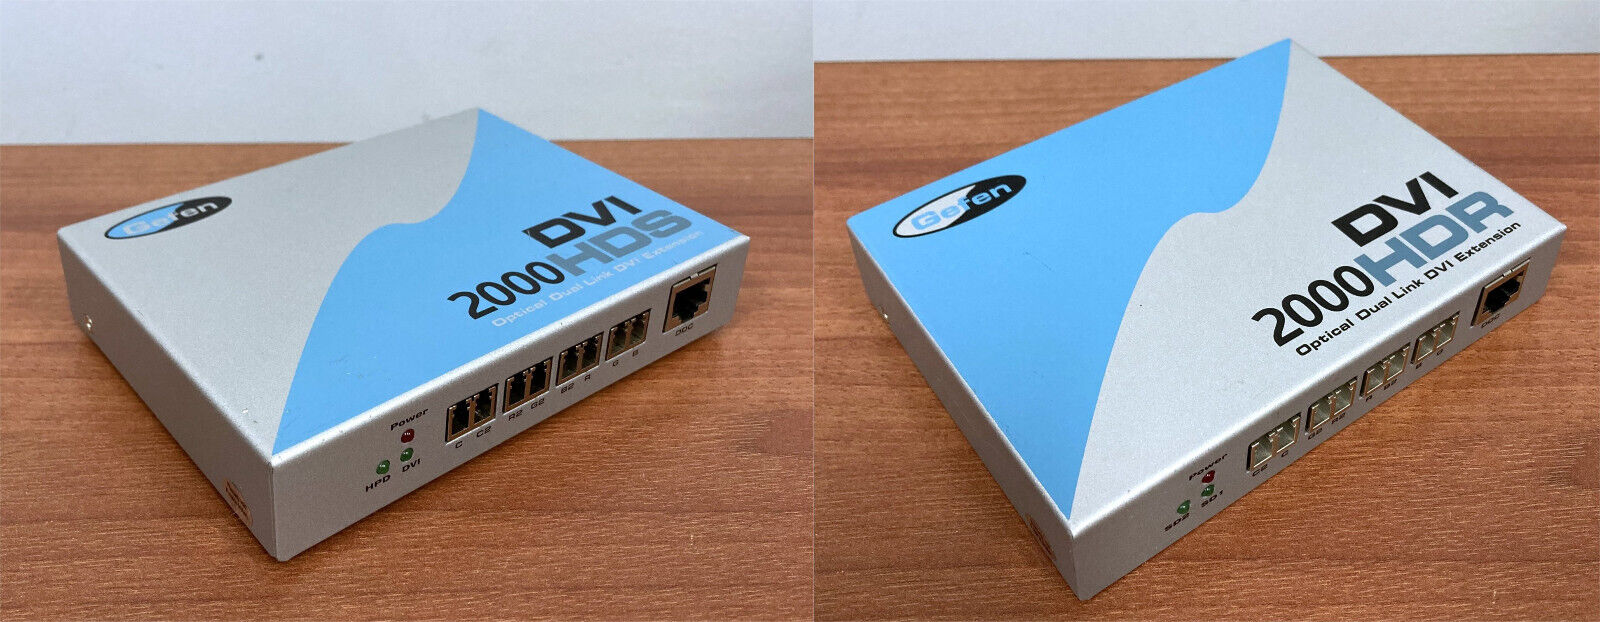 Gefen DVI 2000 HDS HDR Optical Dual Link DVI Extension SENDER & RECEIVER